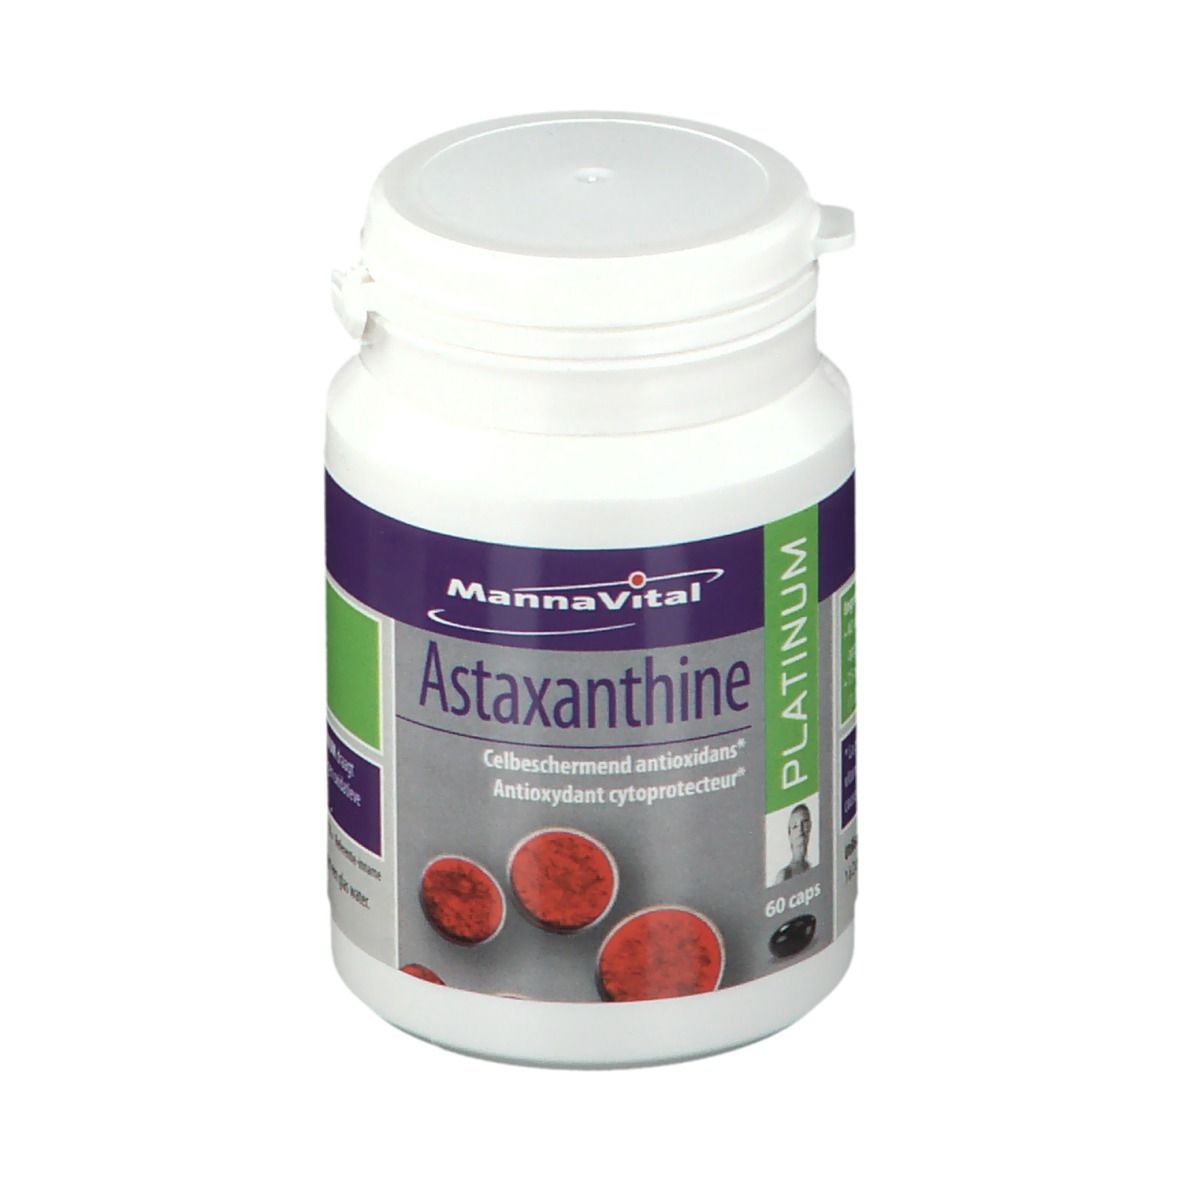 MannaVital Platinum Astaxanthine